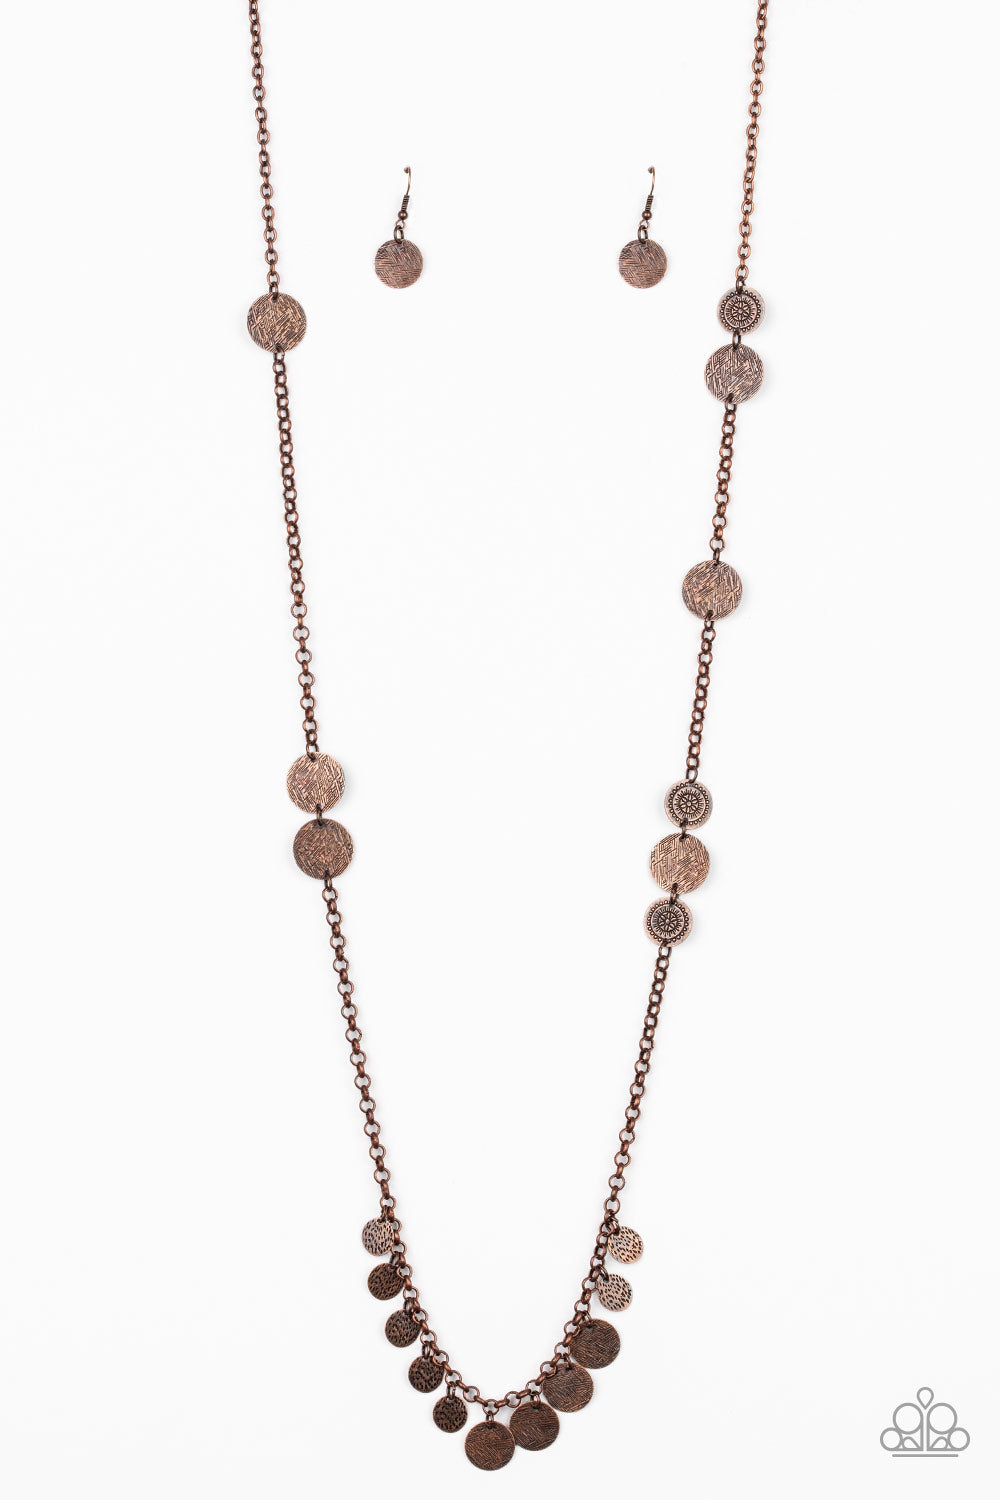 Trailblazing Trinket - Copper Necklace freeshipping - JewLz4u Gemstone Gallery